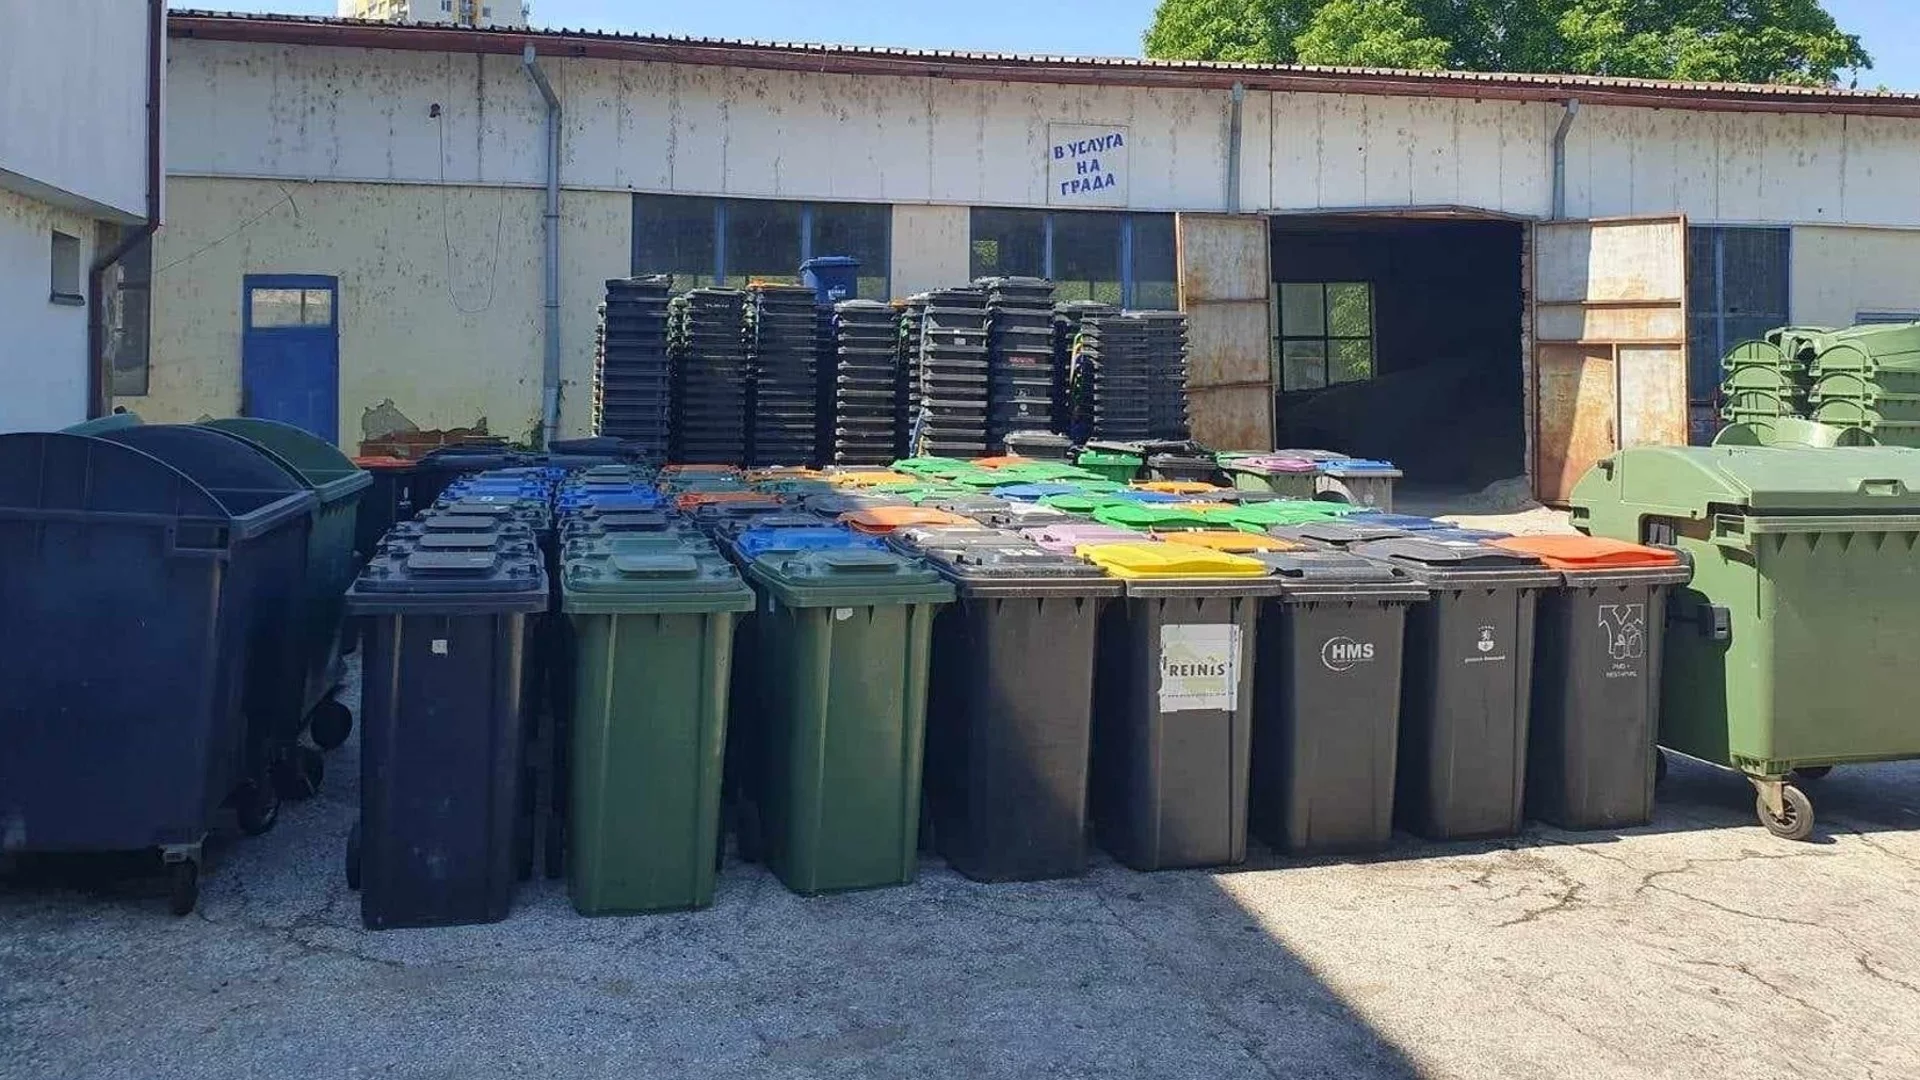 Допълнителни над 100 кофи за боклук разпределя Плевен за селата